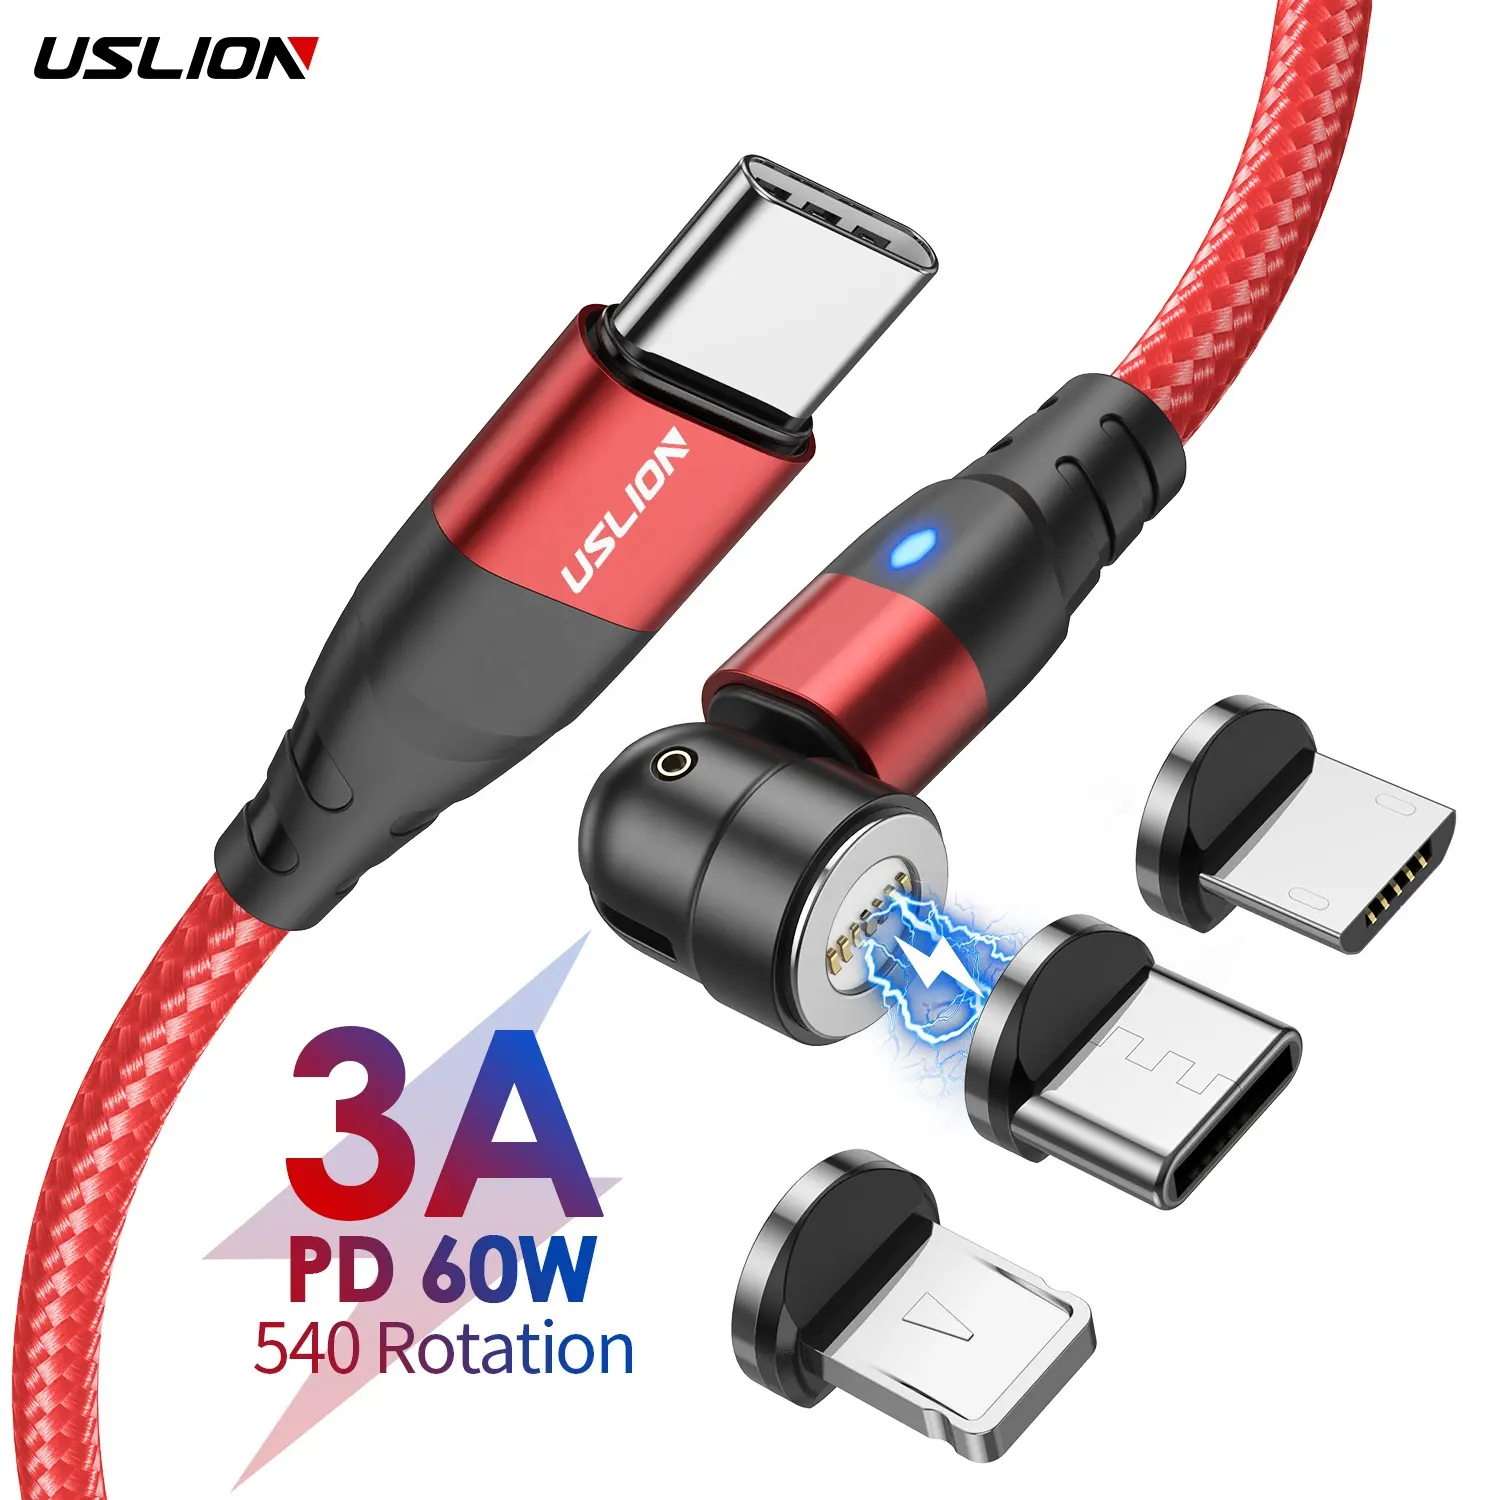 USLION-Cable de carga magnético para iPhone y Macbook, Cable de datos magnético de 60W PD USB C a tipo C 540